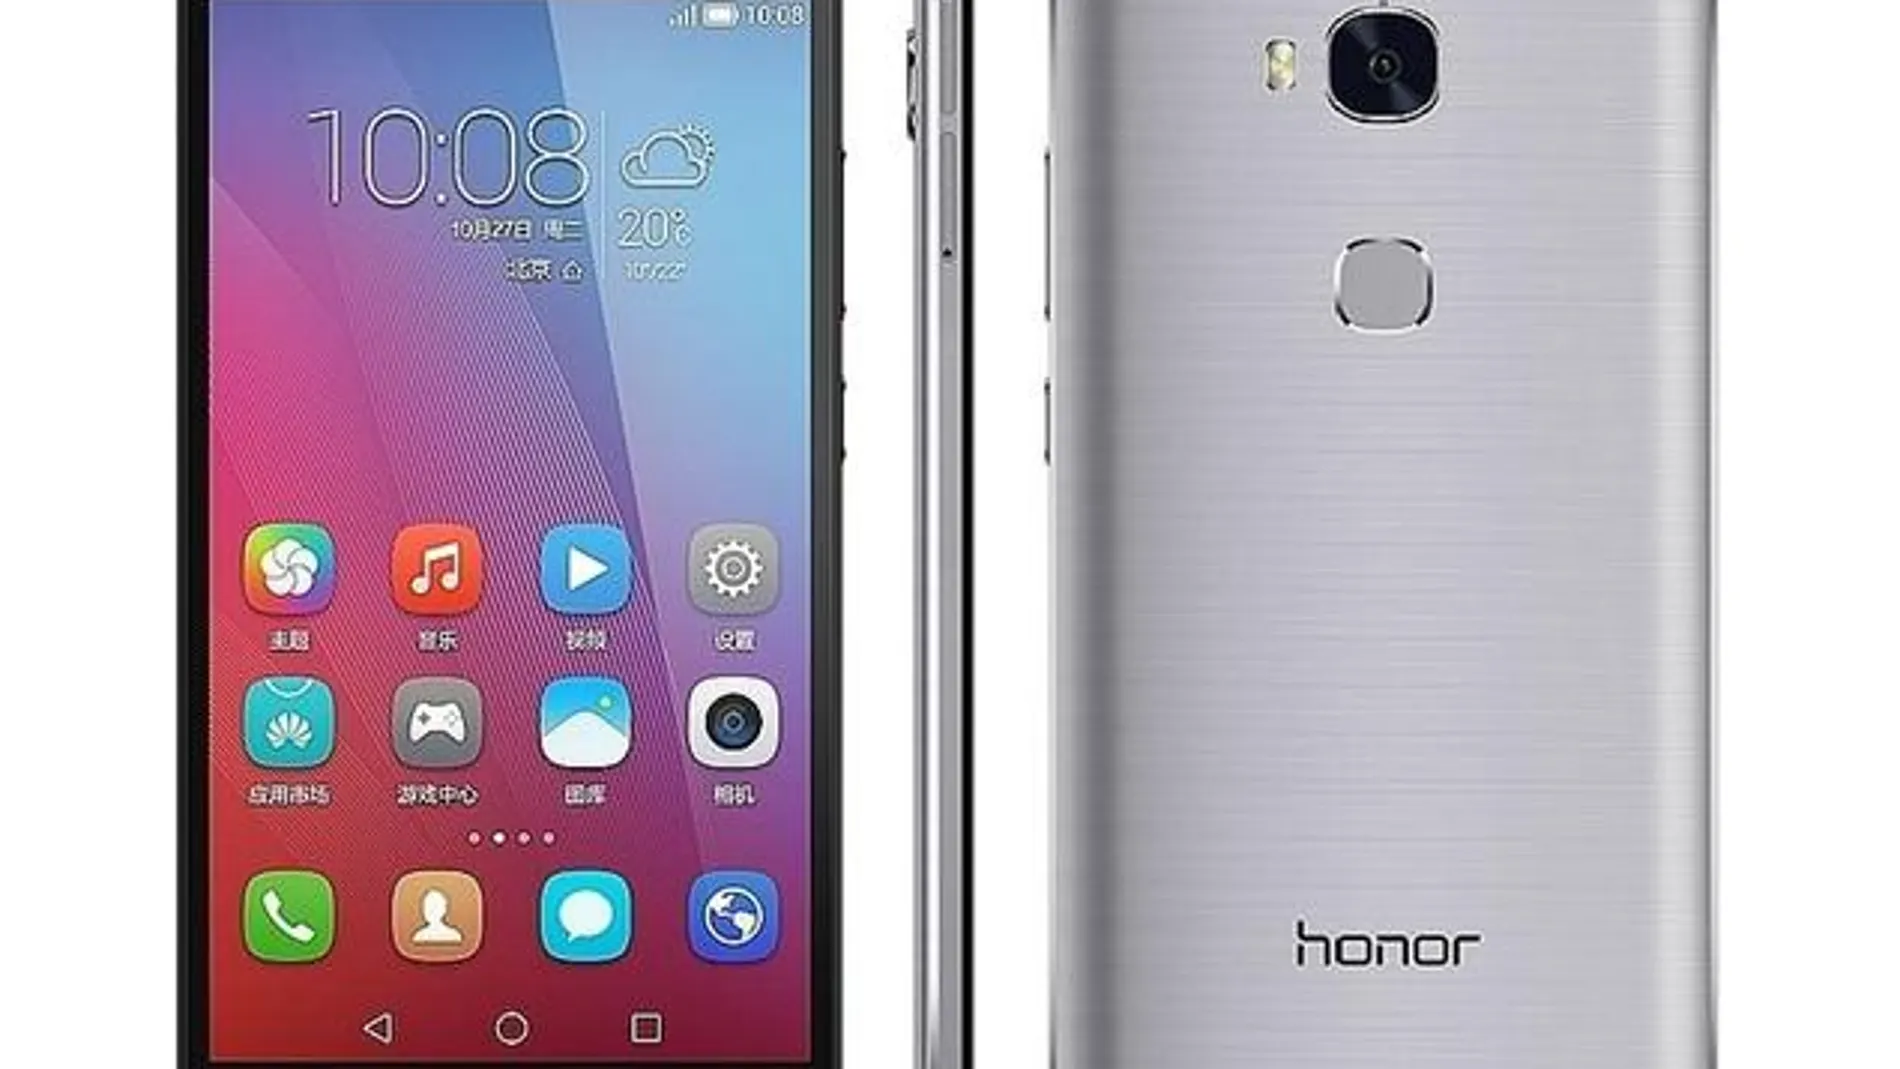 Huawei vende su (nuevo) Honor por 229,99 euros